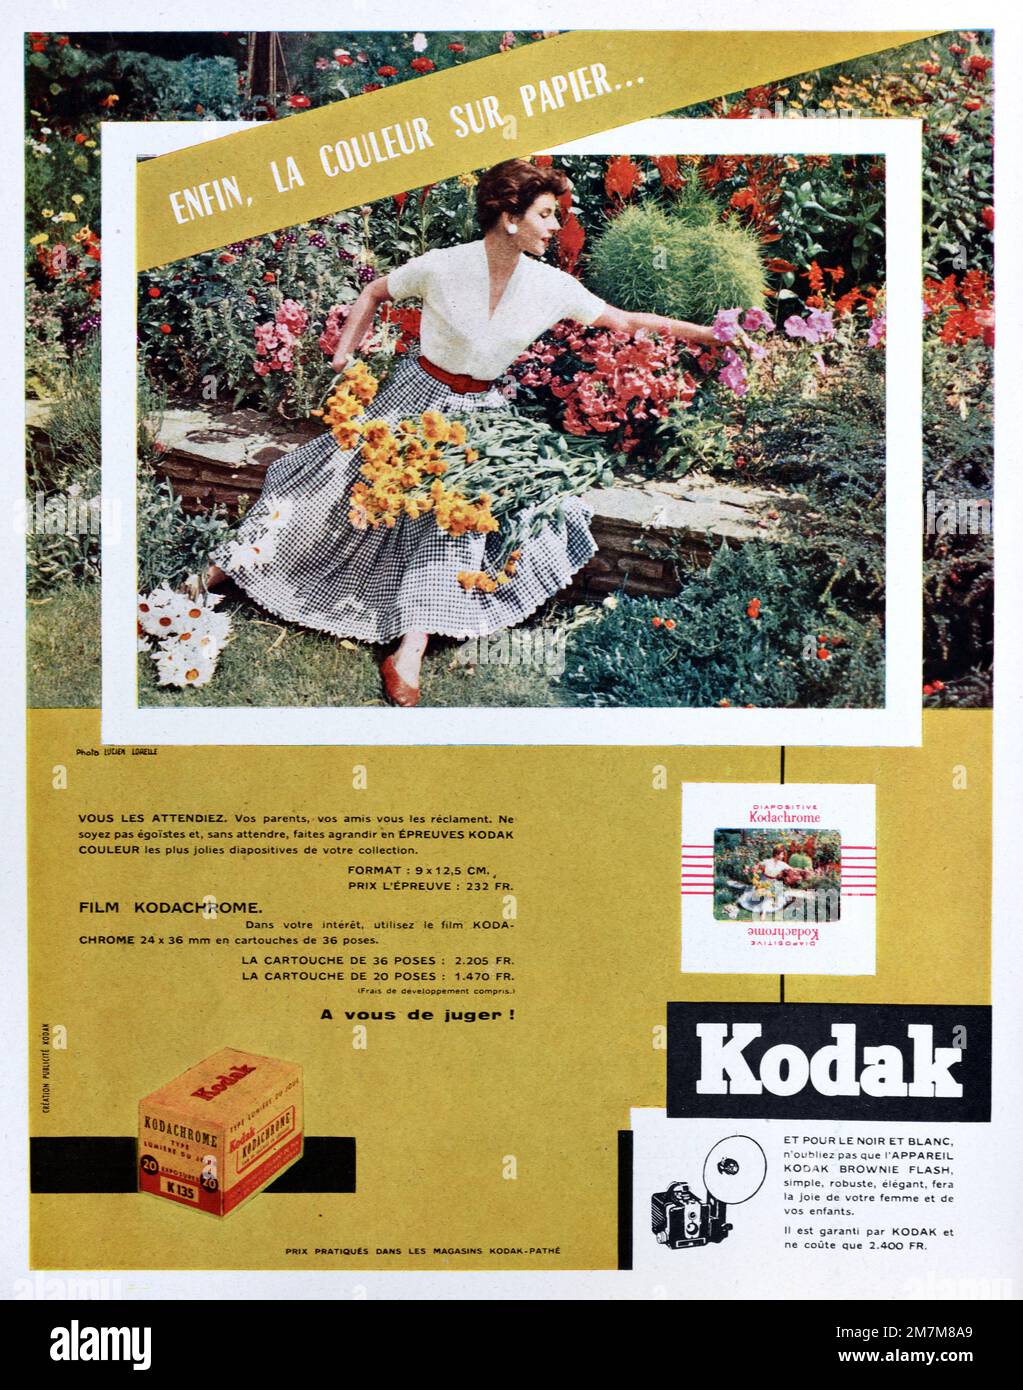 Klassische oder alte Werbung, Werbung, Publicity oder Illustration für Kodak, Kodak Ektachrome Slide Film und Kodak Farb- oder Farb-Fotopapier 1956 Stockfoto